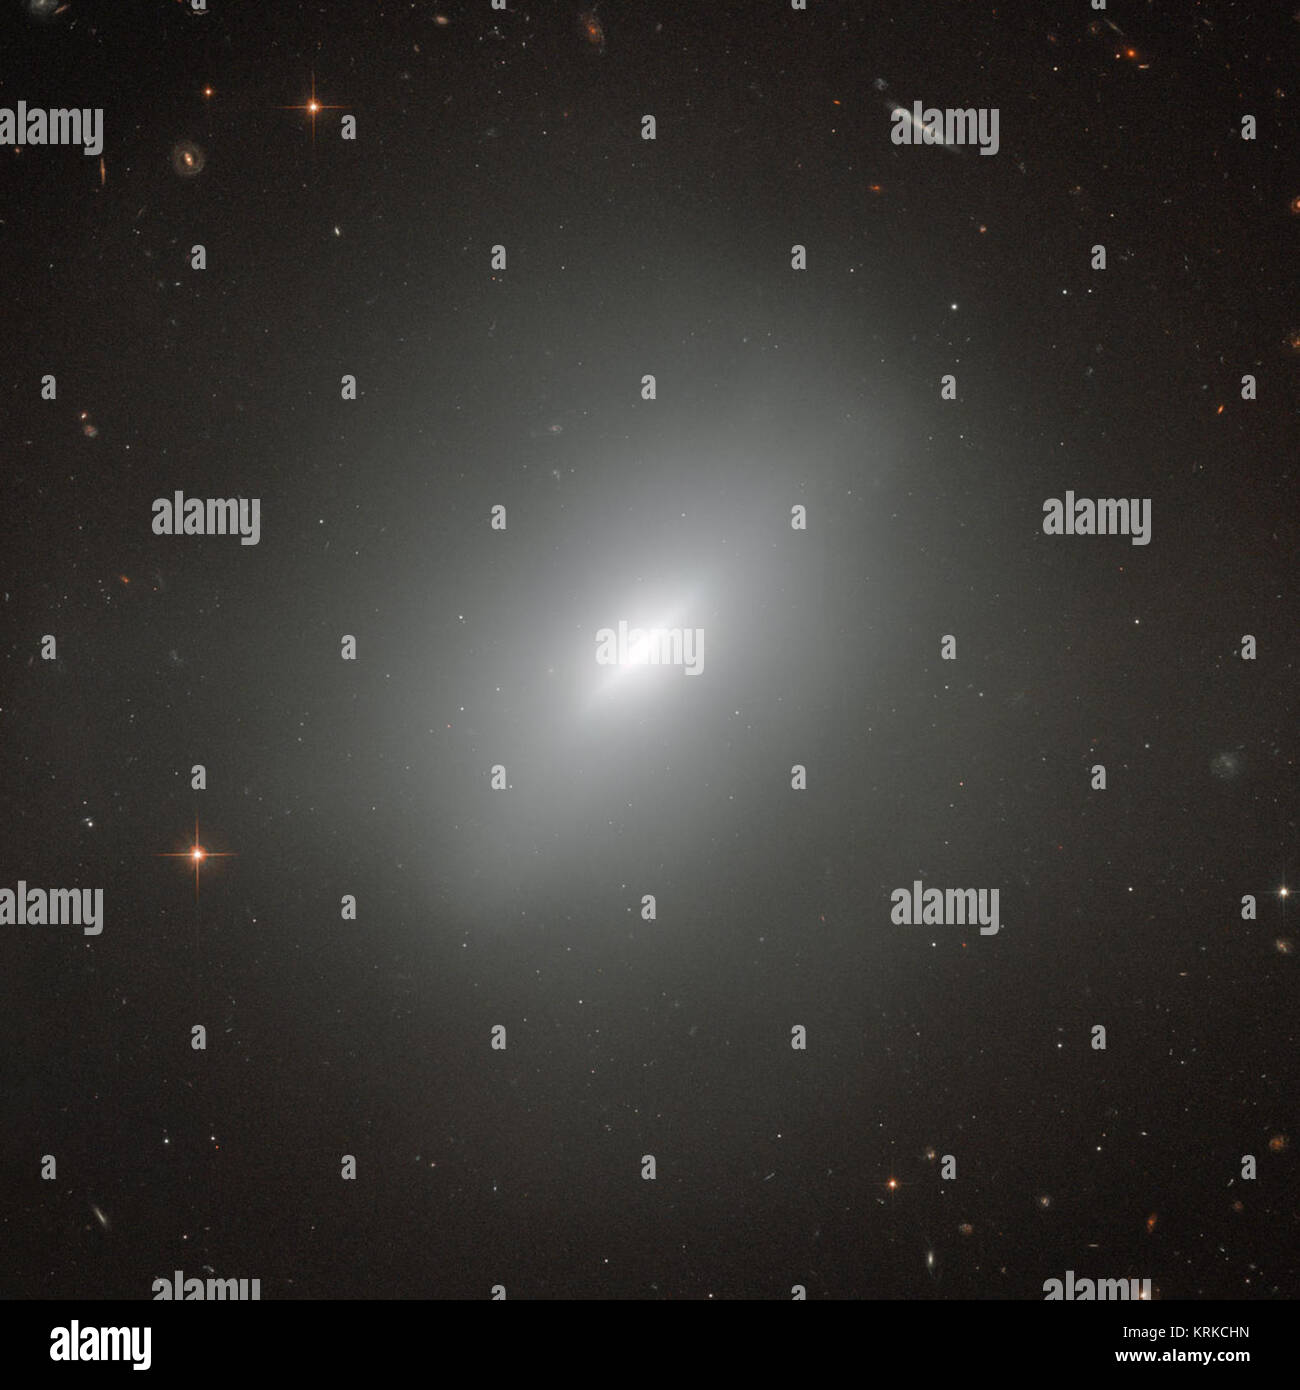 Al centro di questa incredibile immagine è la galassia ellittica NGC 3610. Che circonda il Galaxy sono una ricchezza di altre galassie di tutte le forme. Ci sono galassie a spirale, galassie con un bar nelle loro regioni centrali, distorte galassie e galassie ellittiche, tutte visibili in background. In effetti, quasi ogni punto luminoso in questa immagine è una galassia - le poche stelle di primo piano sono chiaramente distinguibili a causa di picchi di diffrazione che sovrapporre le loro immagini. NGC 3610 è naturalmente la più prominente oggetto in questa immagine - e molto interessante che! Scoperto nel 1793 da William Herschel, ho Foto Stock